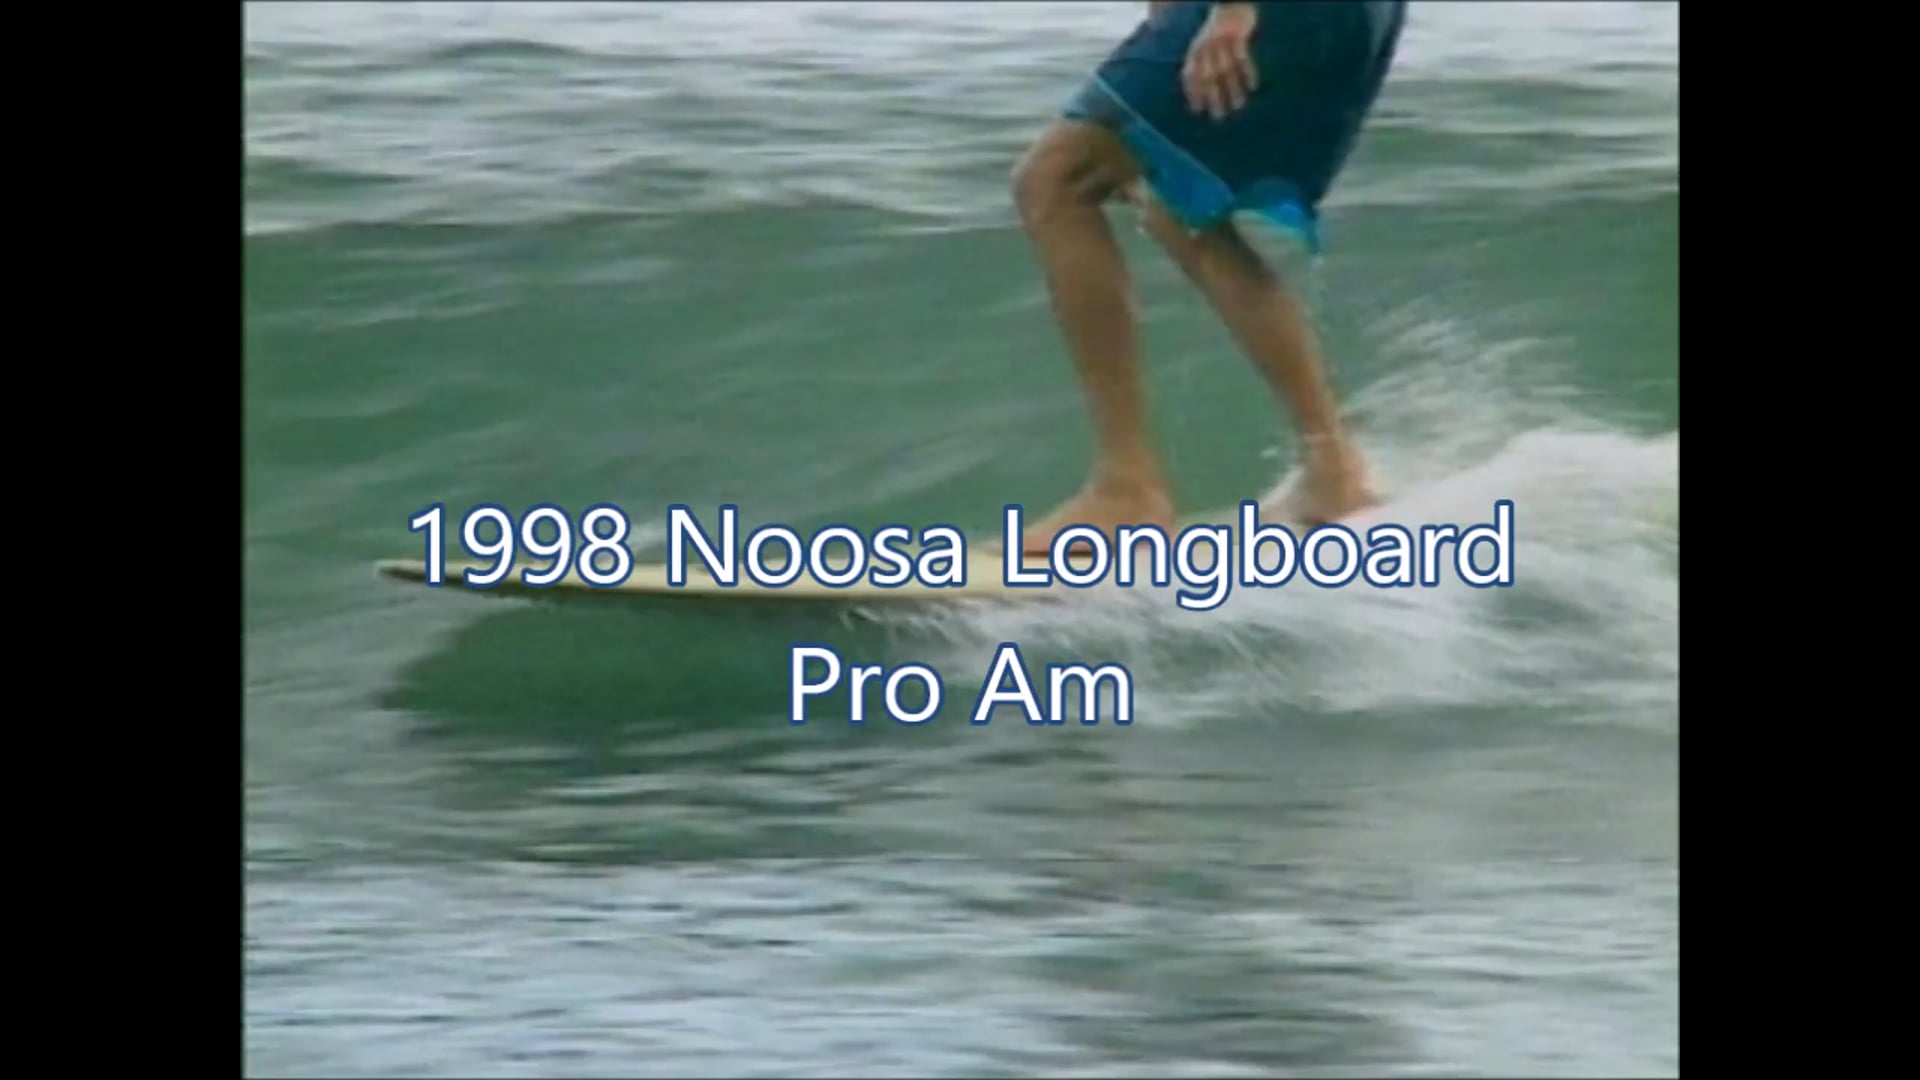 Noosa Longboard Pro Am – 1998